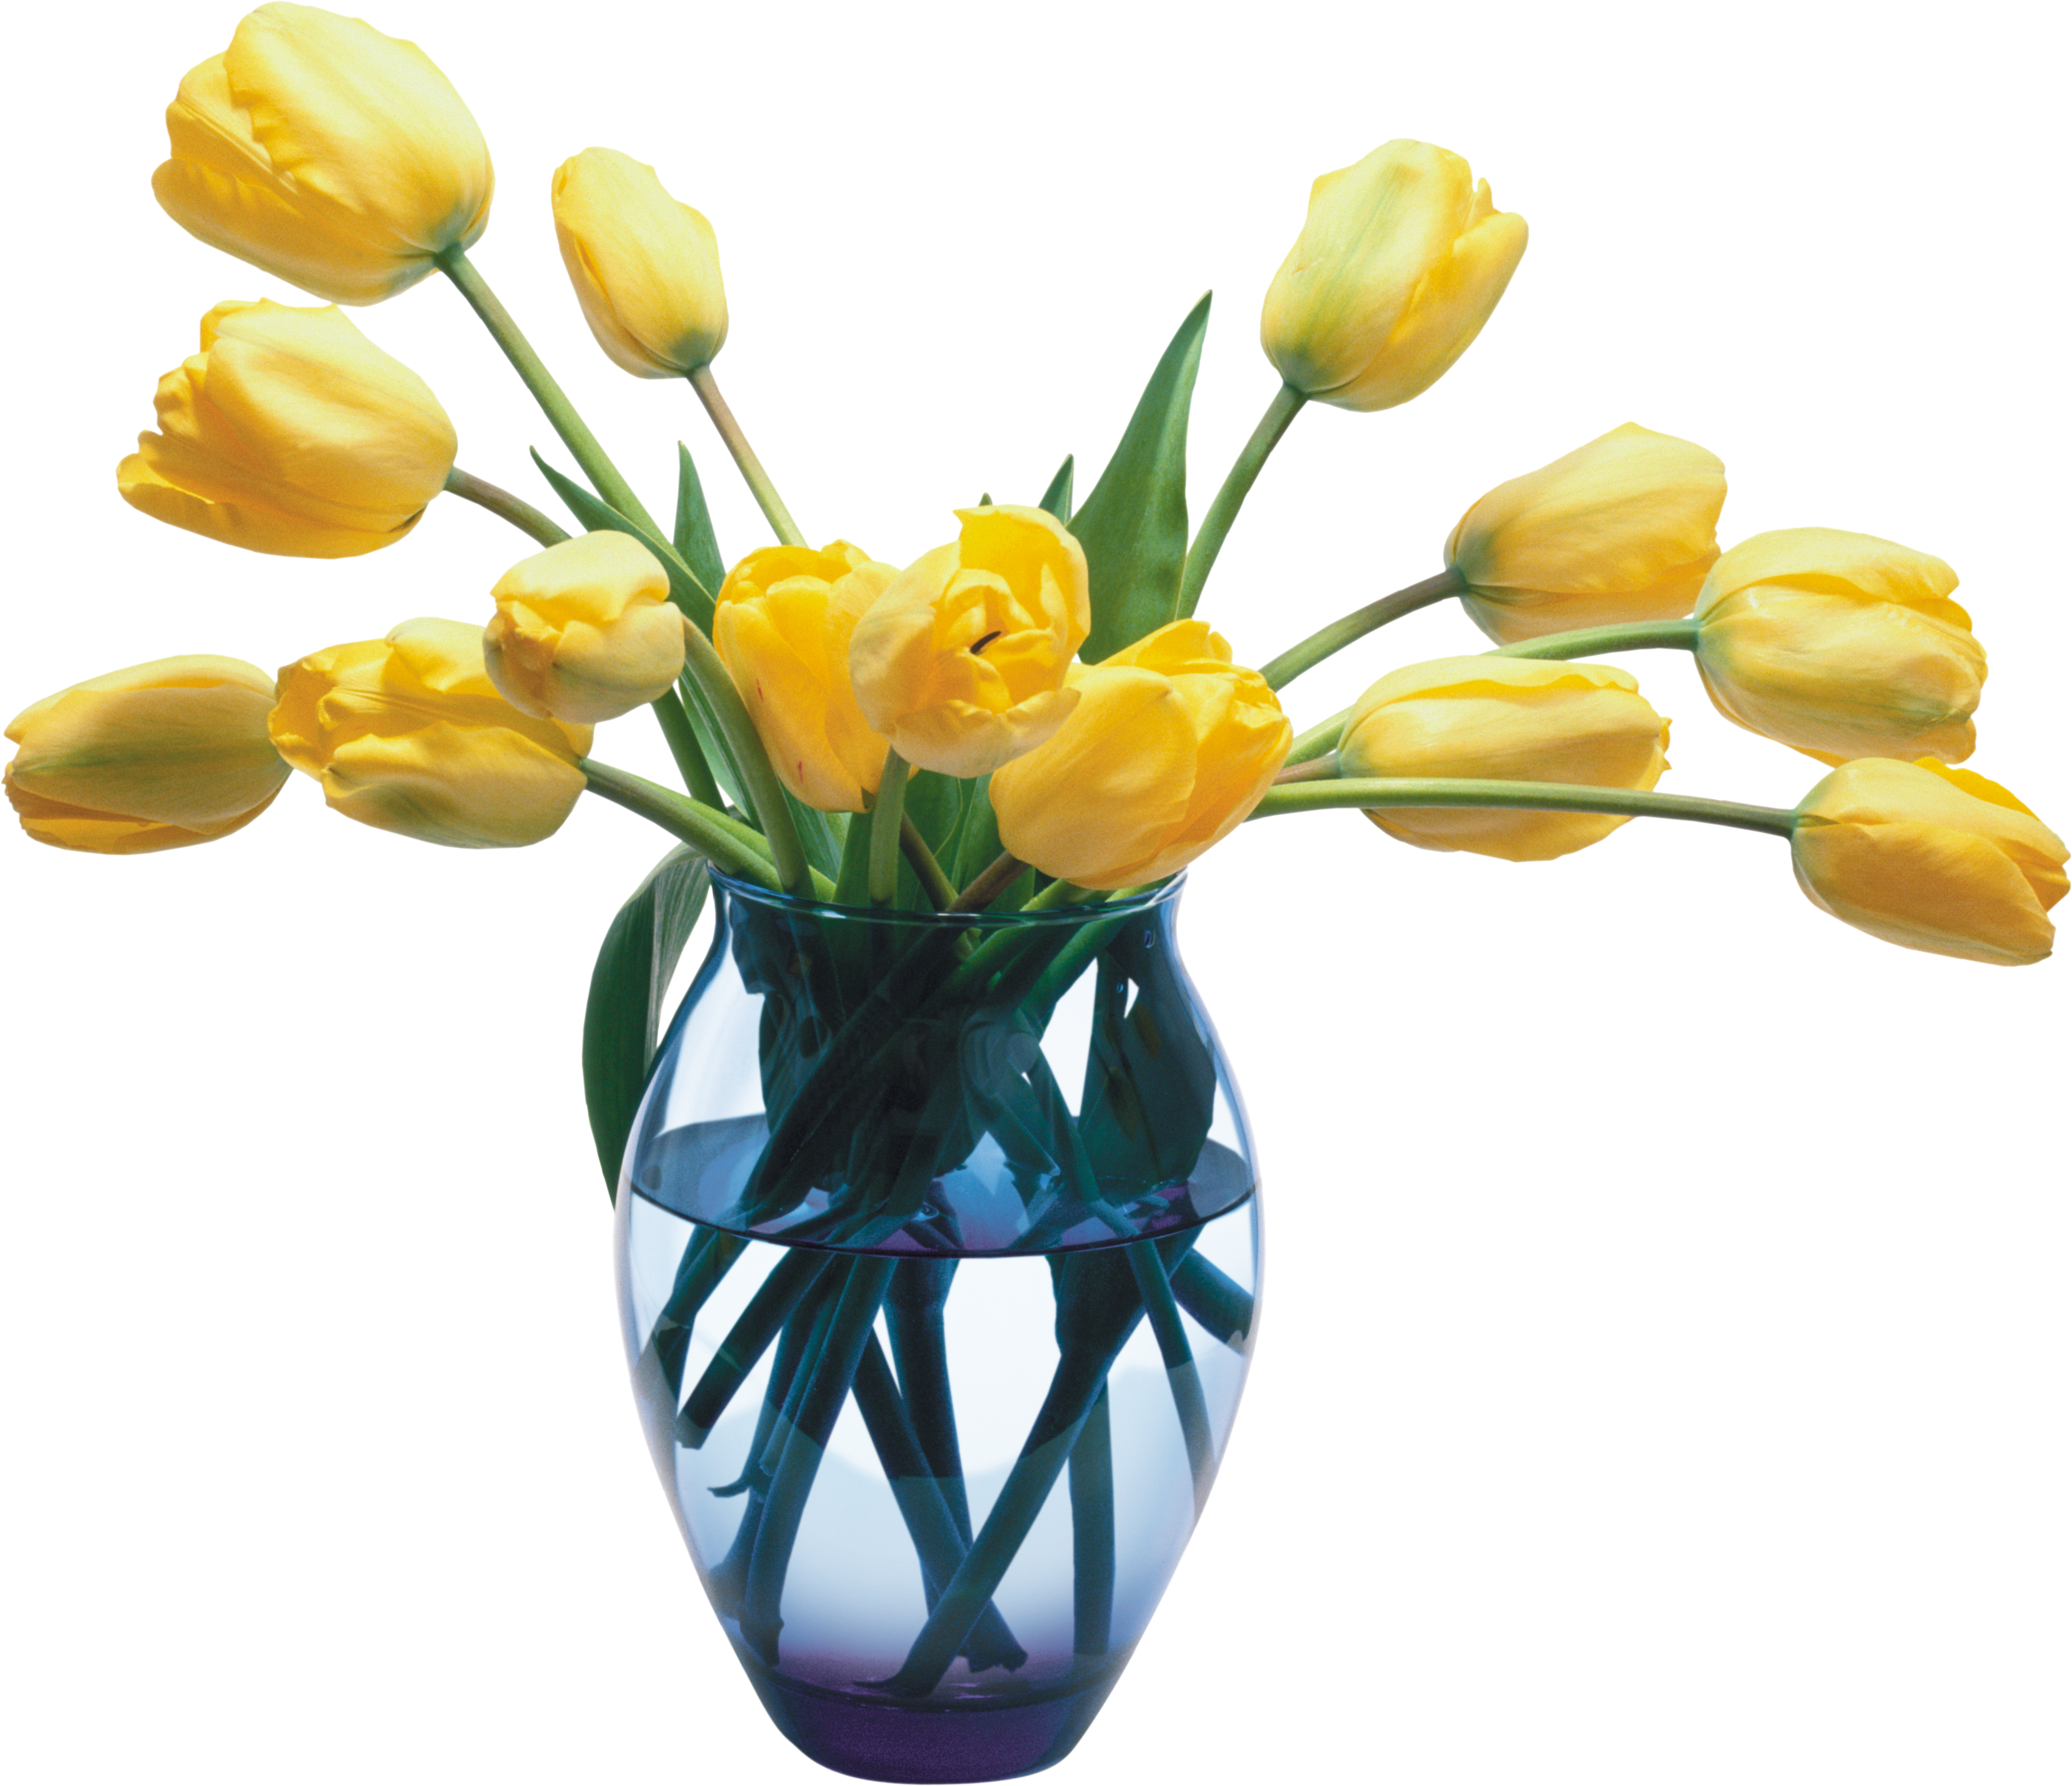 Flower vase png. Images free download